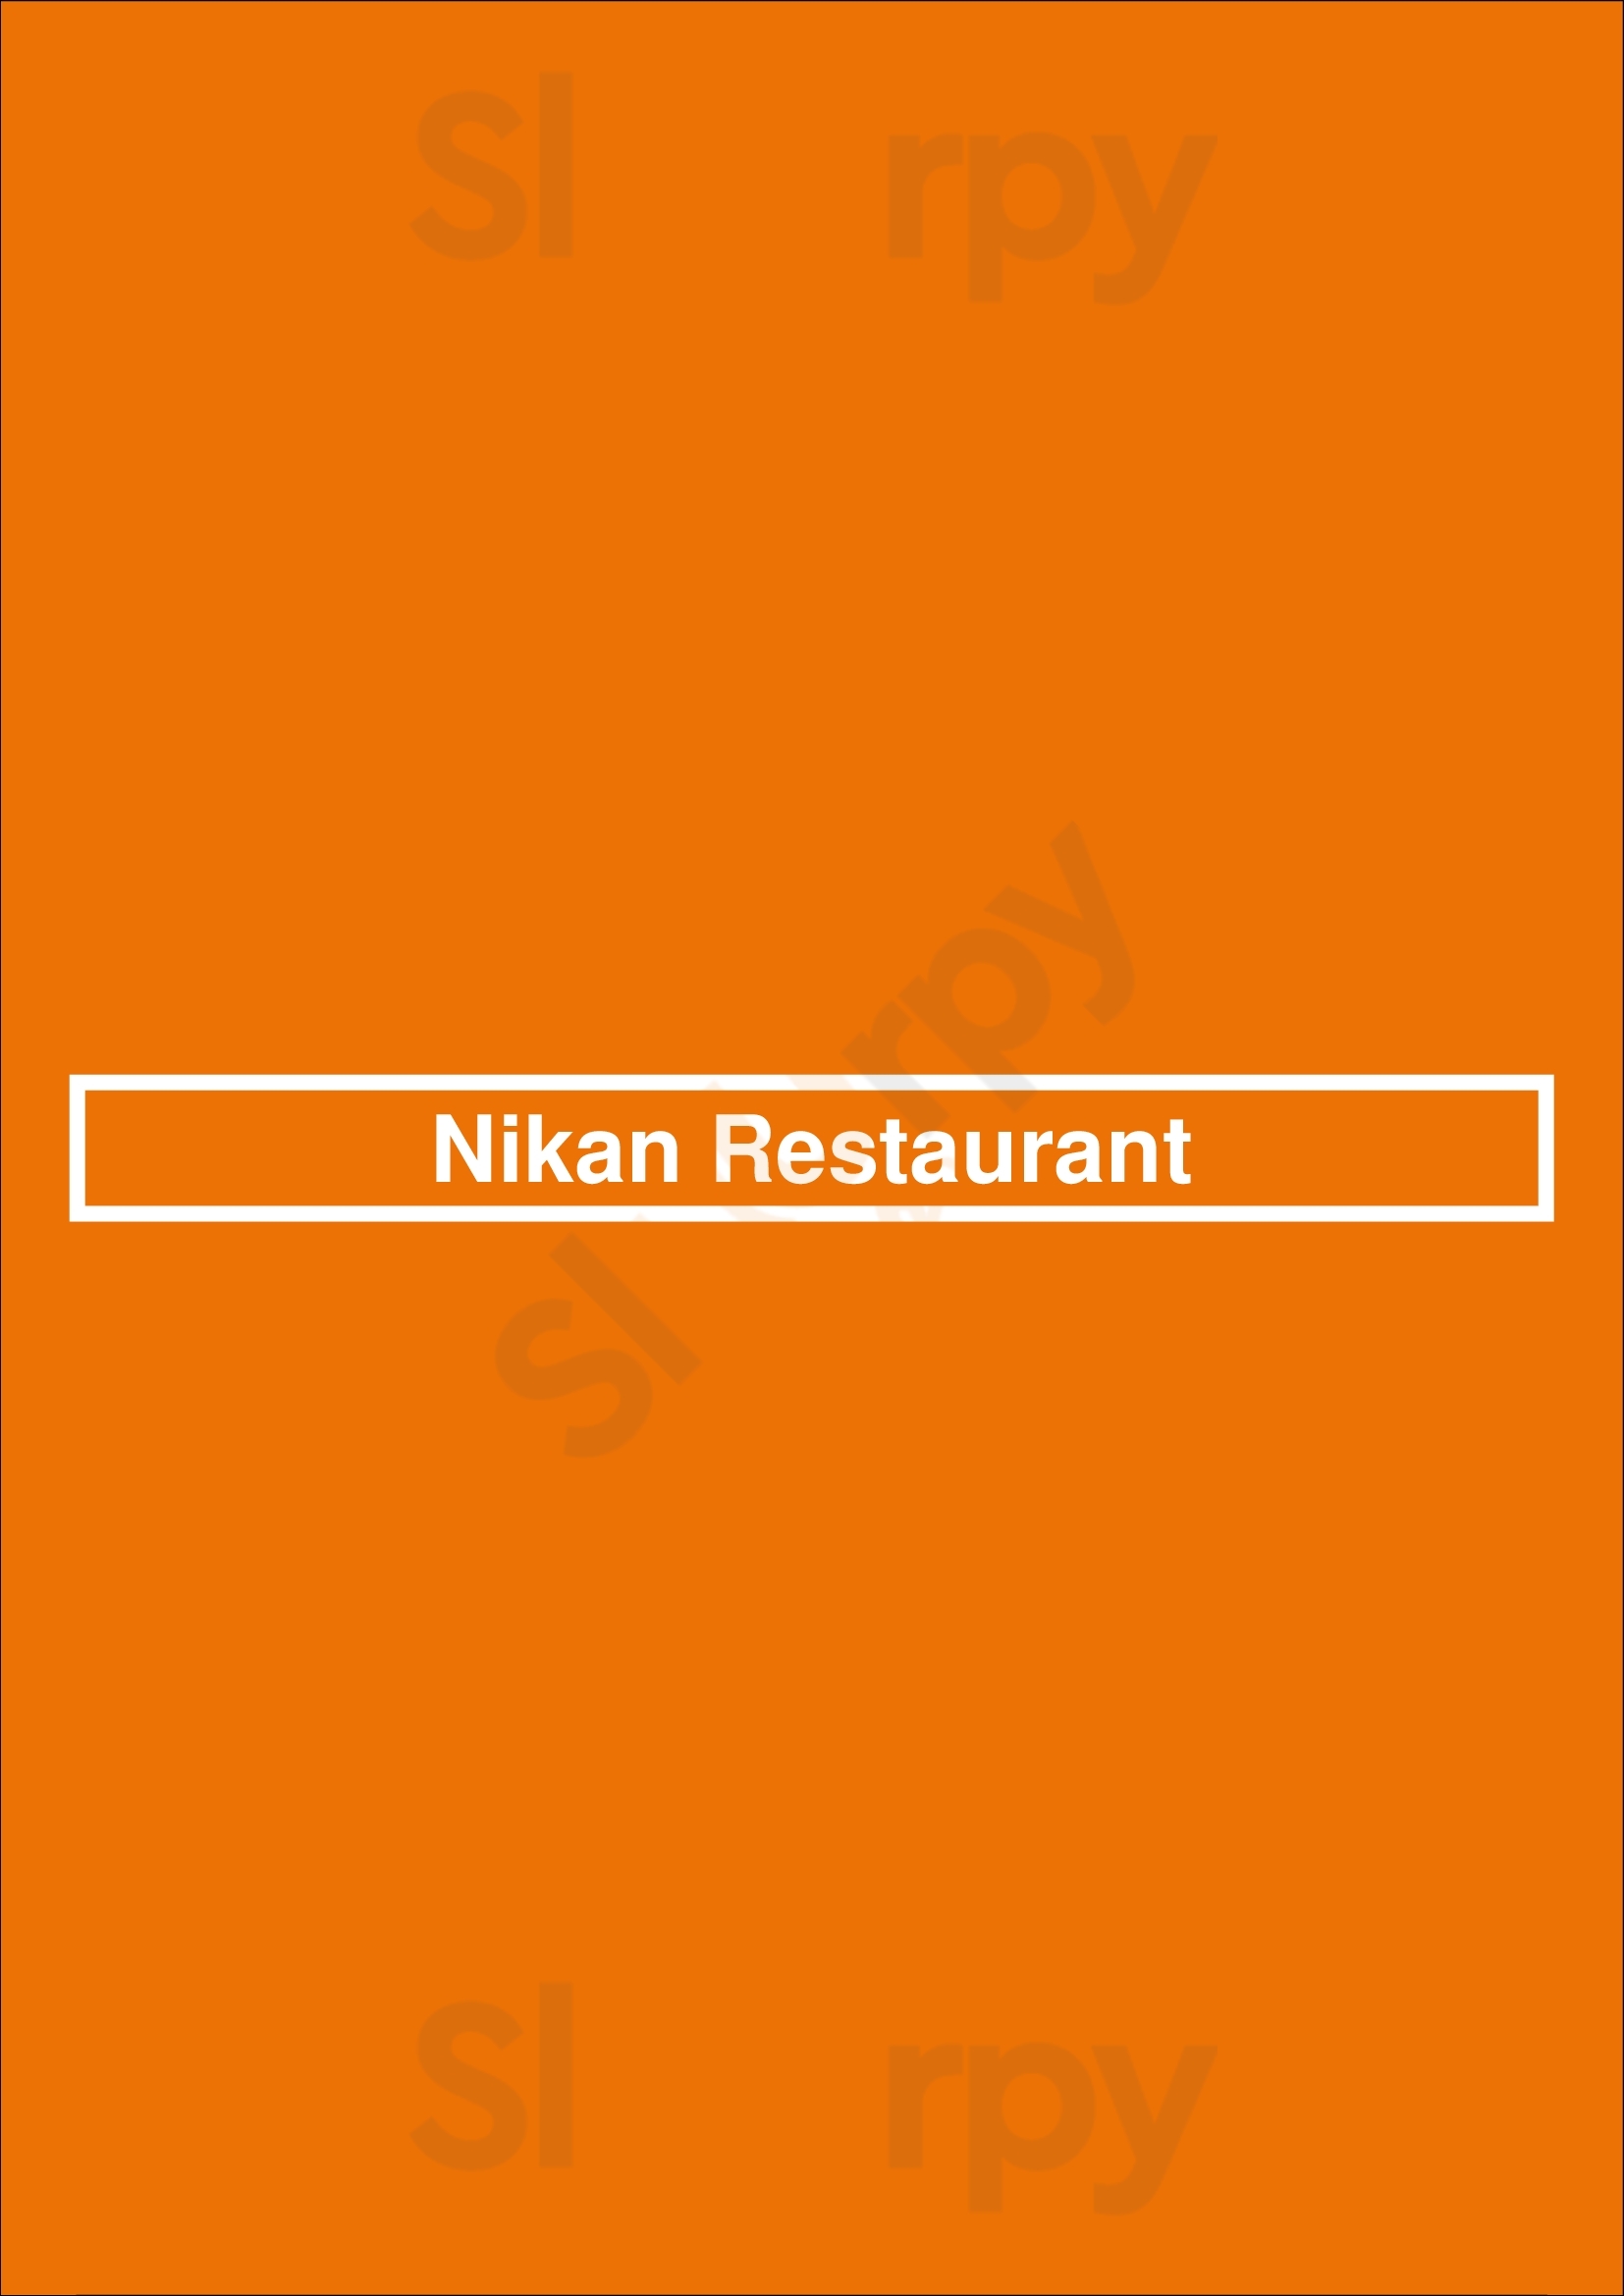 Nikan Restaurant Ryde Menu - 1